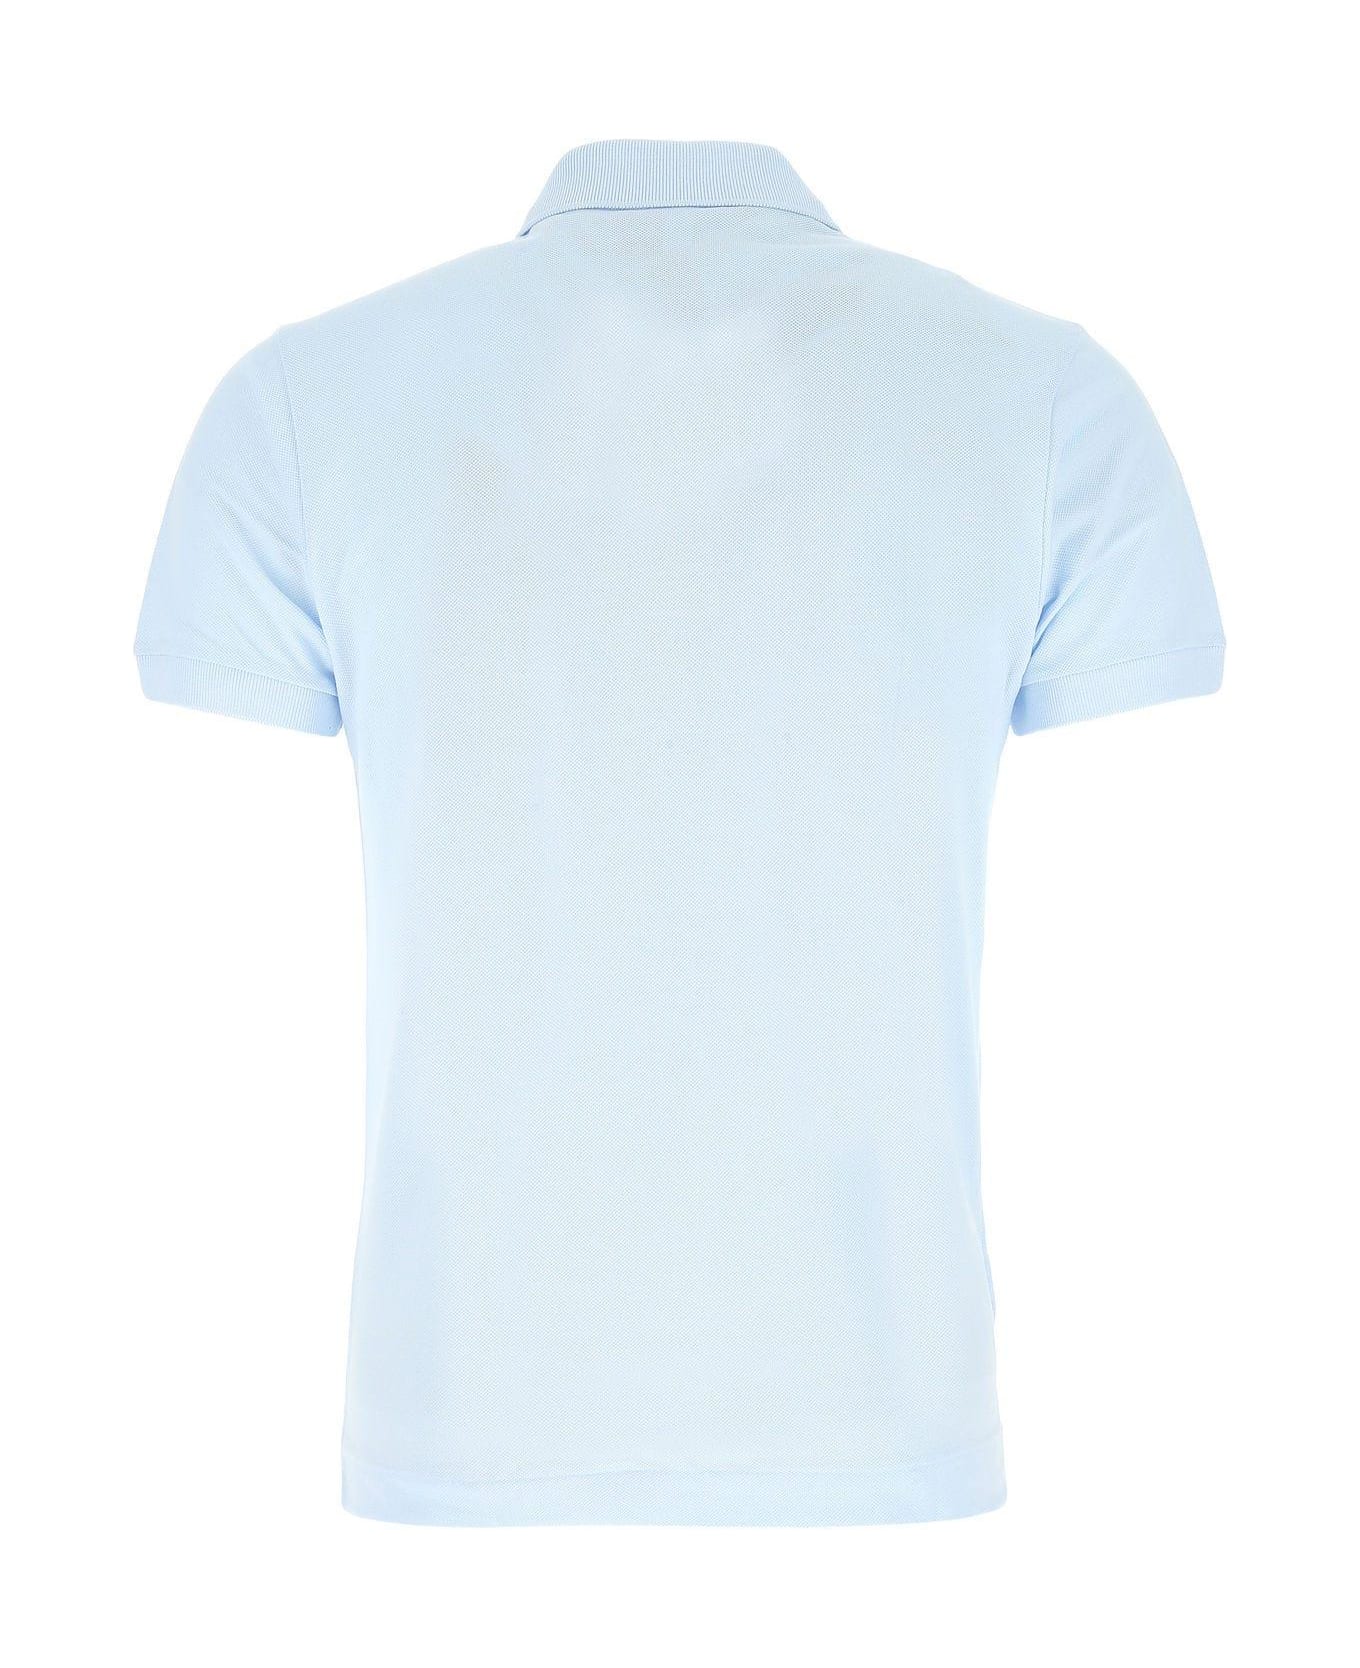 Lacoste Pastel Light-blue Piquet Polo Shirt Lacoste - LIGHT BLUE シャツ